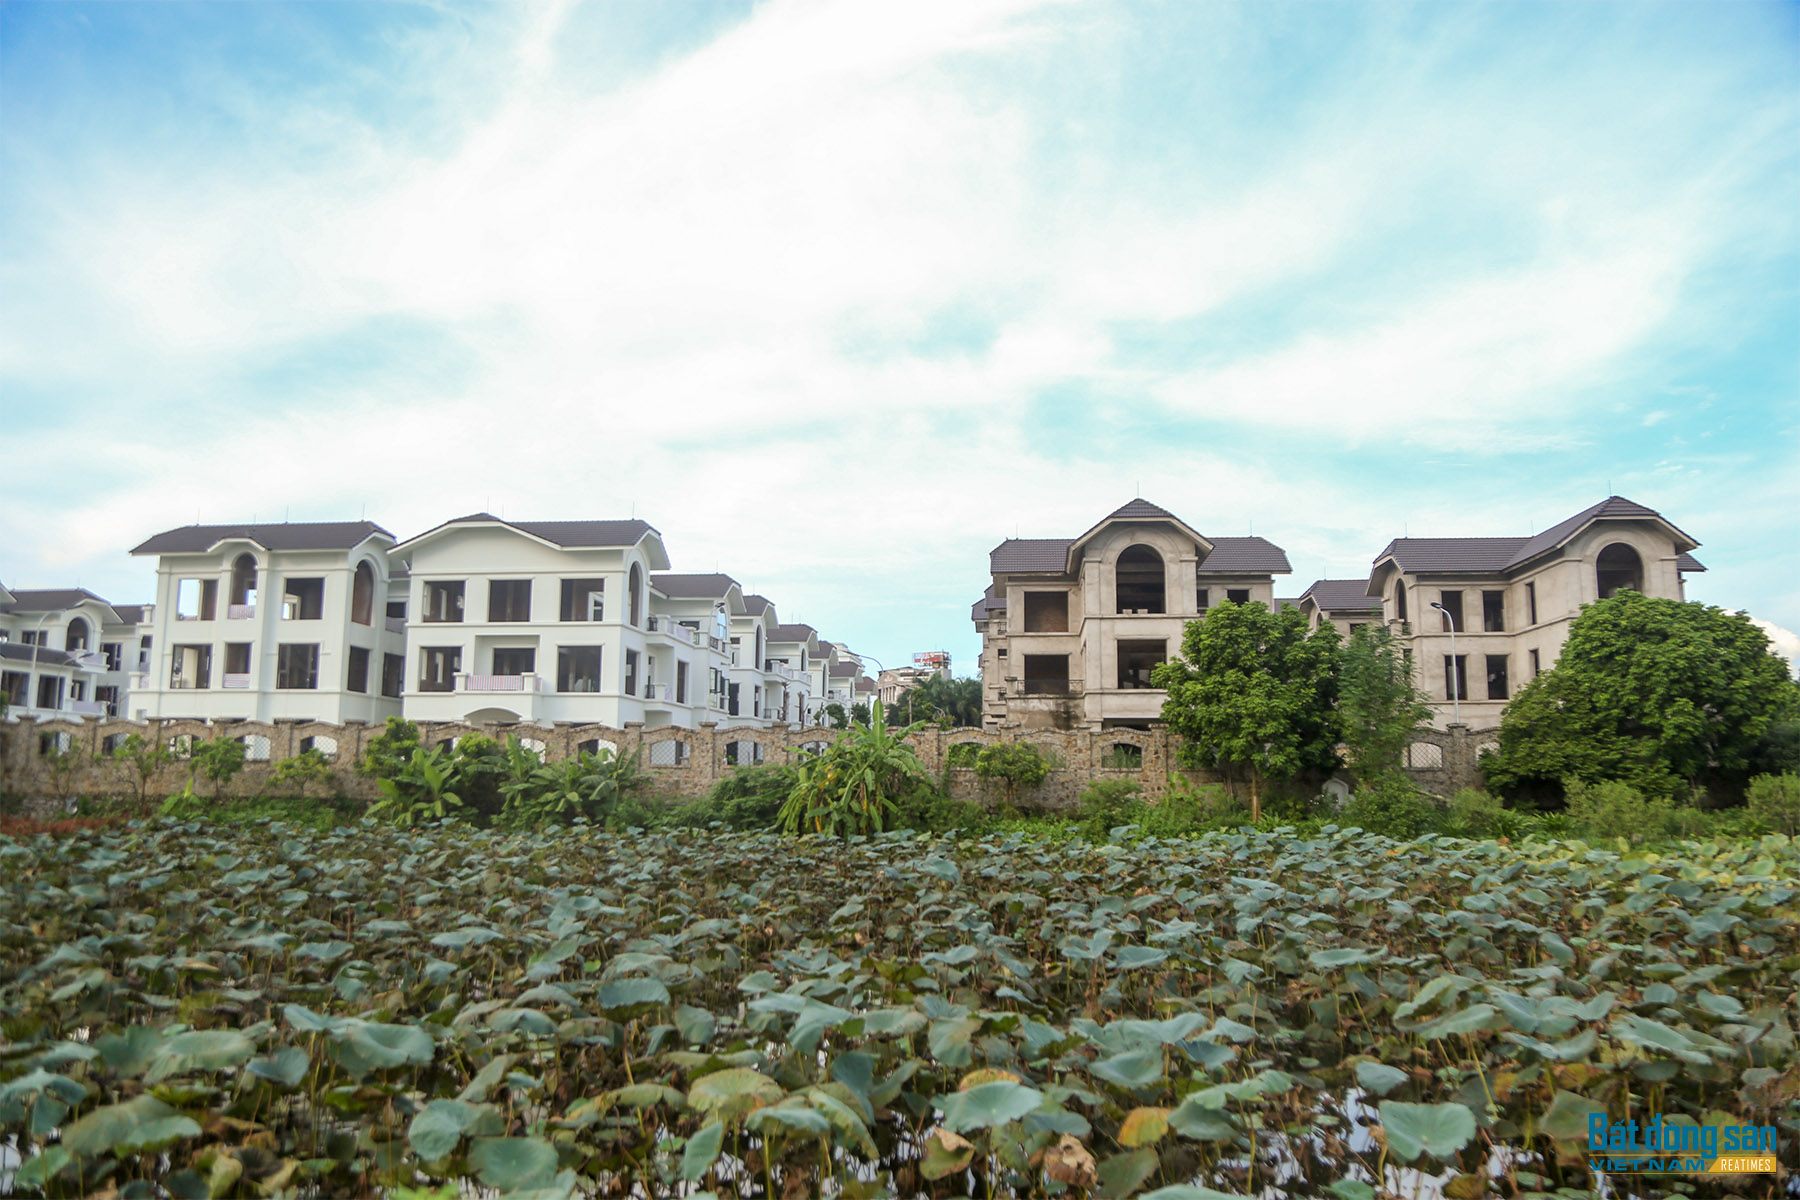 Reatimes_13.png, Dự án 44 căn biệt thự bỏ hoang, làng Đoàn kết